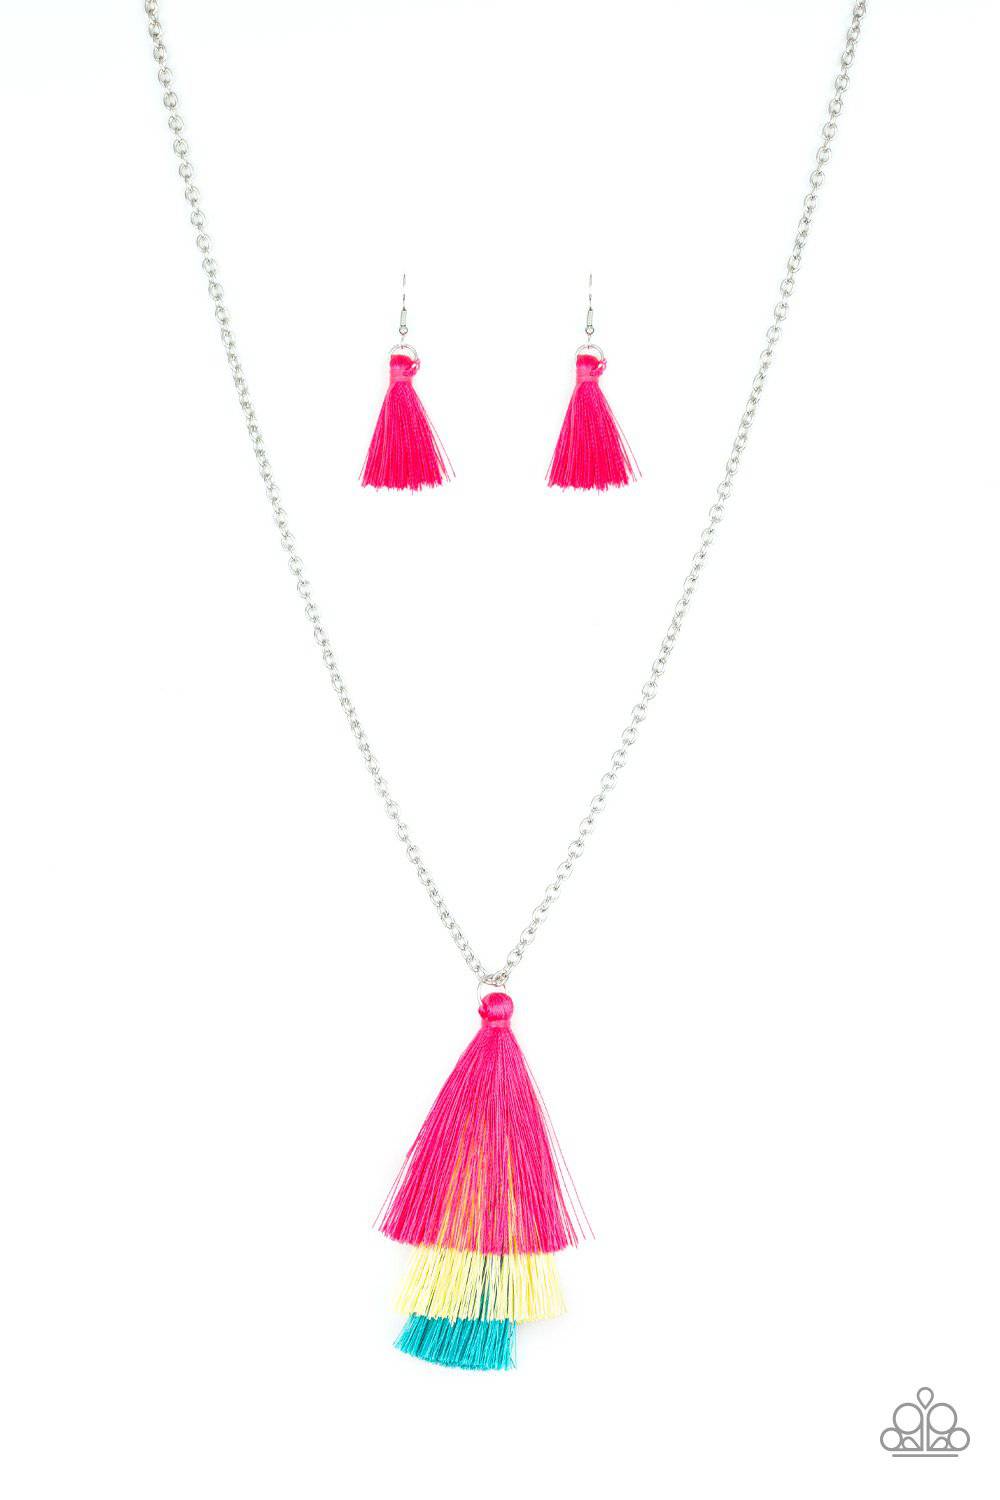 Triple The Tassel - Pink Yellow Blue Tassel Necklace - Paparazzi Accessories - GlaMarous Titi Jewels